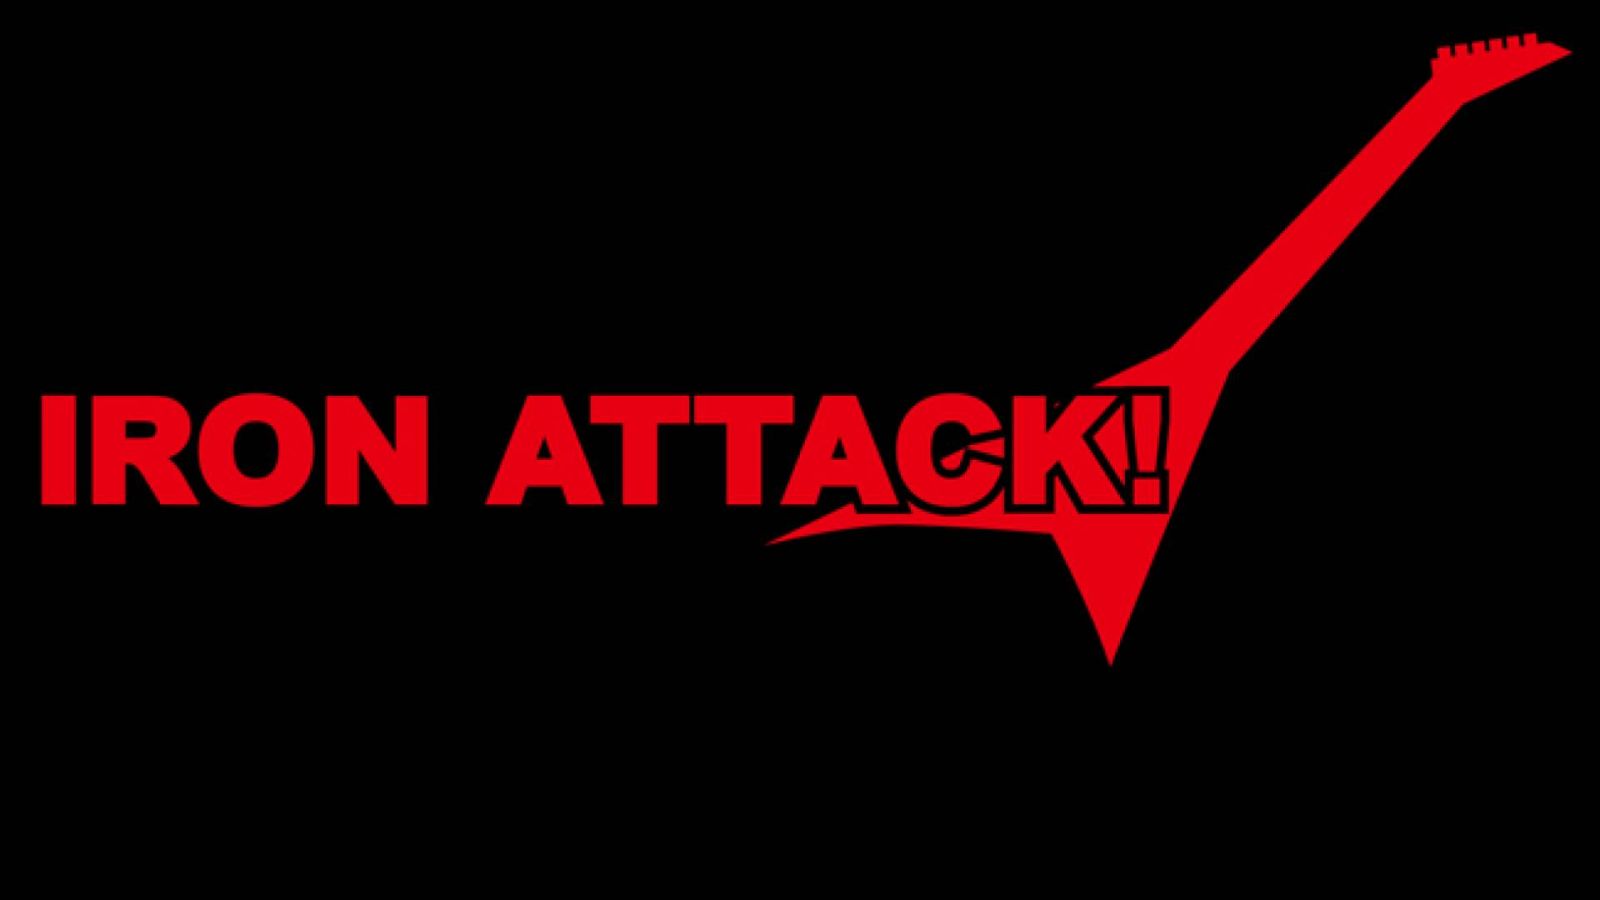 Neujahrsbotschaft von IRON ATTACK! © 2015 IRON ATTACK! All rights reserved.